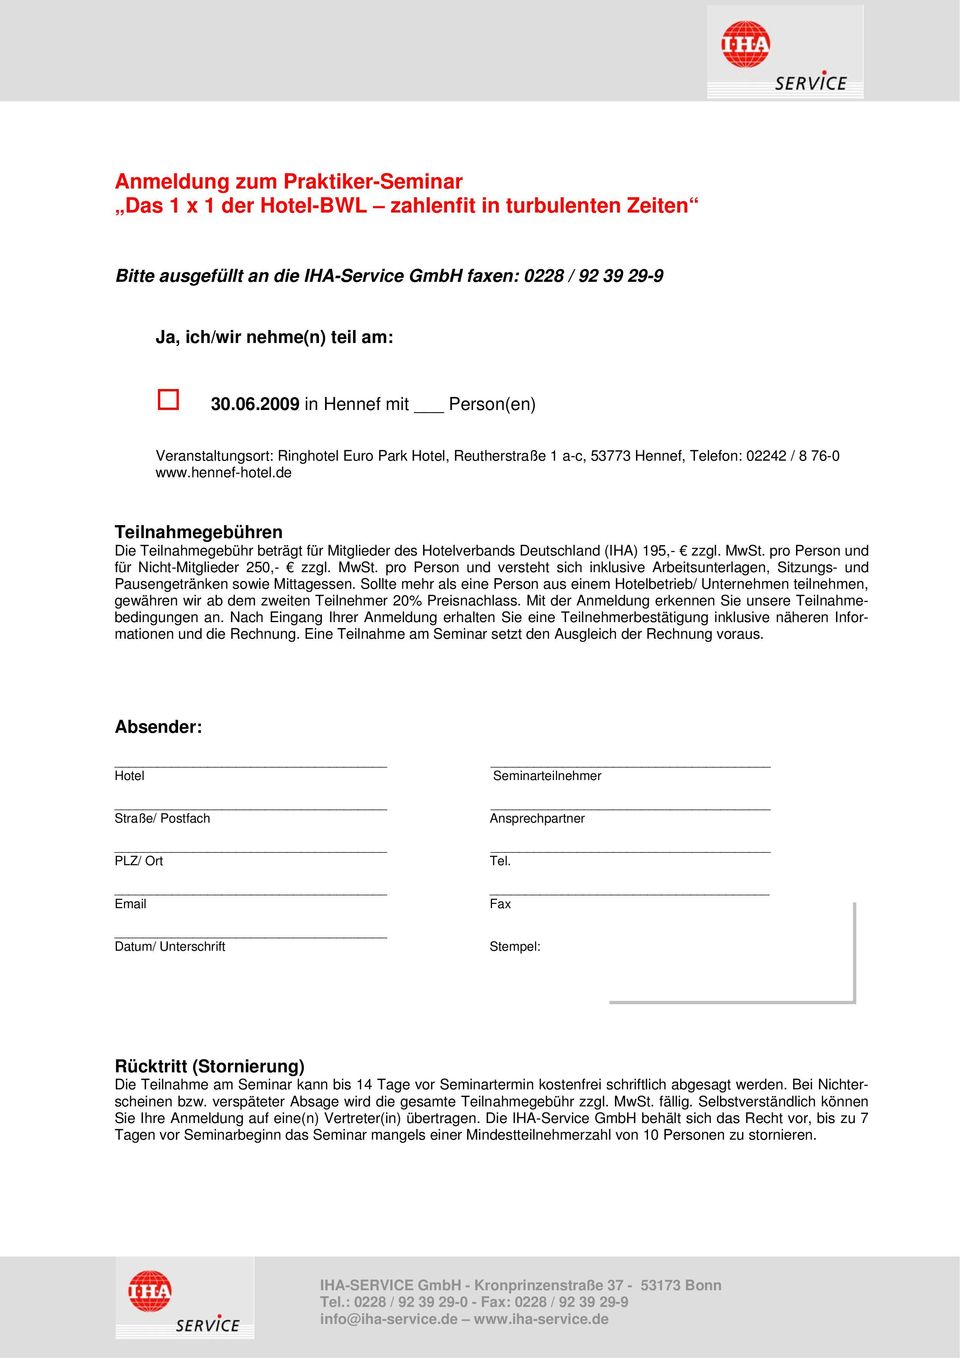 de Teilnahmegebühren Die Teilnahmegebühr beträgt für Mitglieder des Hotelverbands Deutschland (IHA) 195,- zzgl. MwSt.